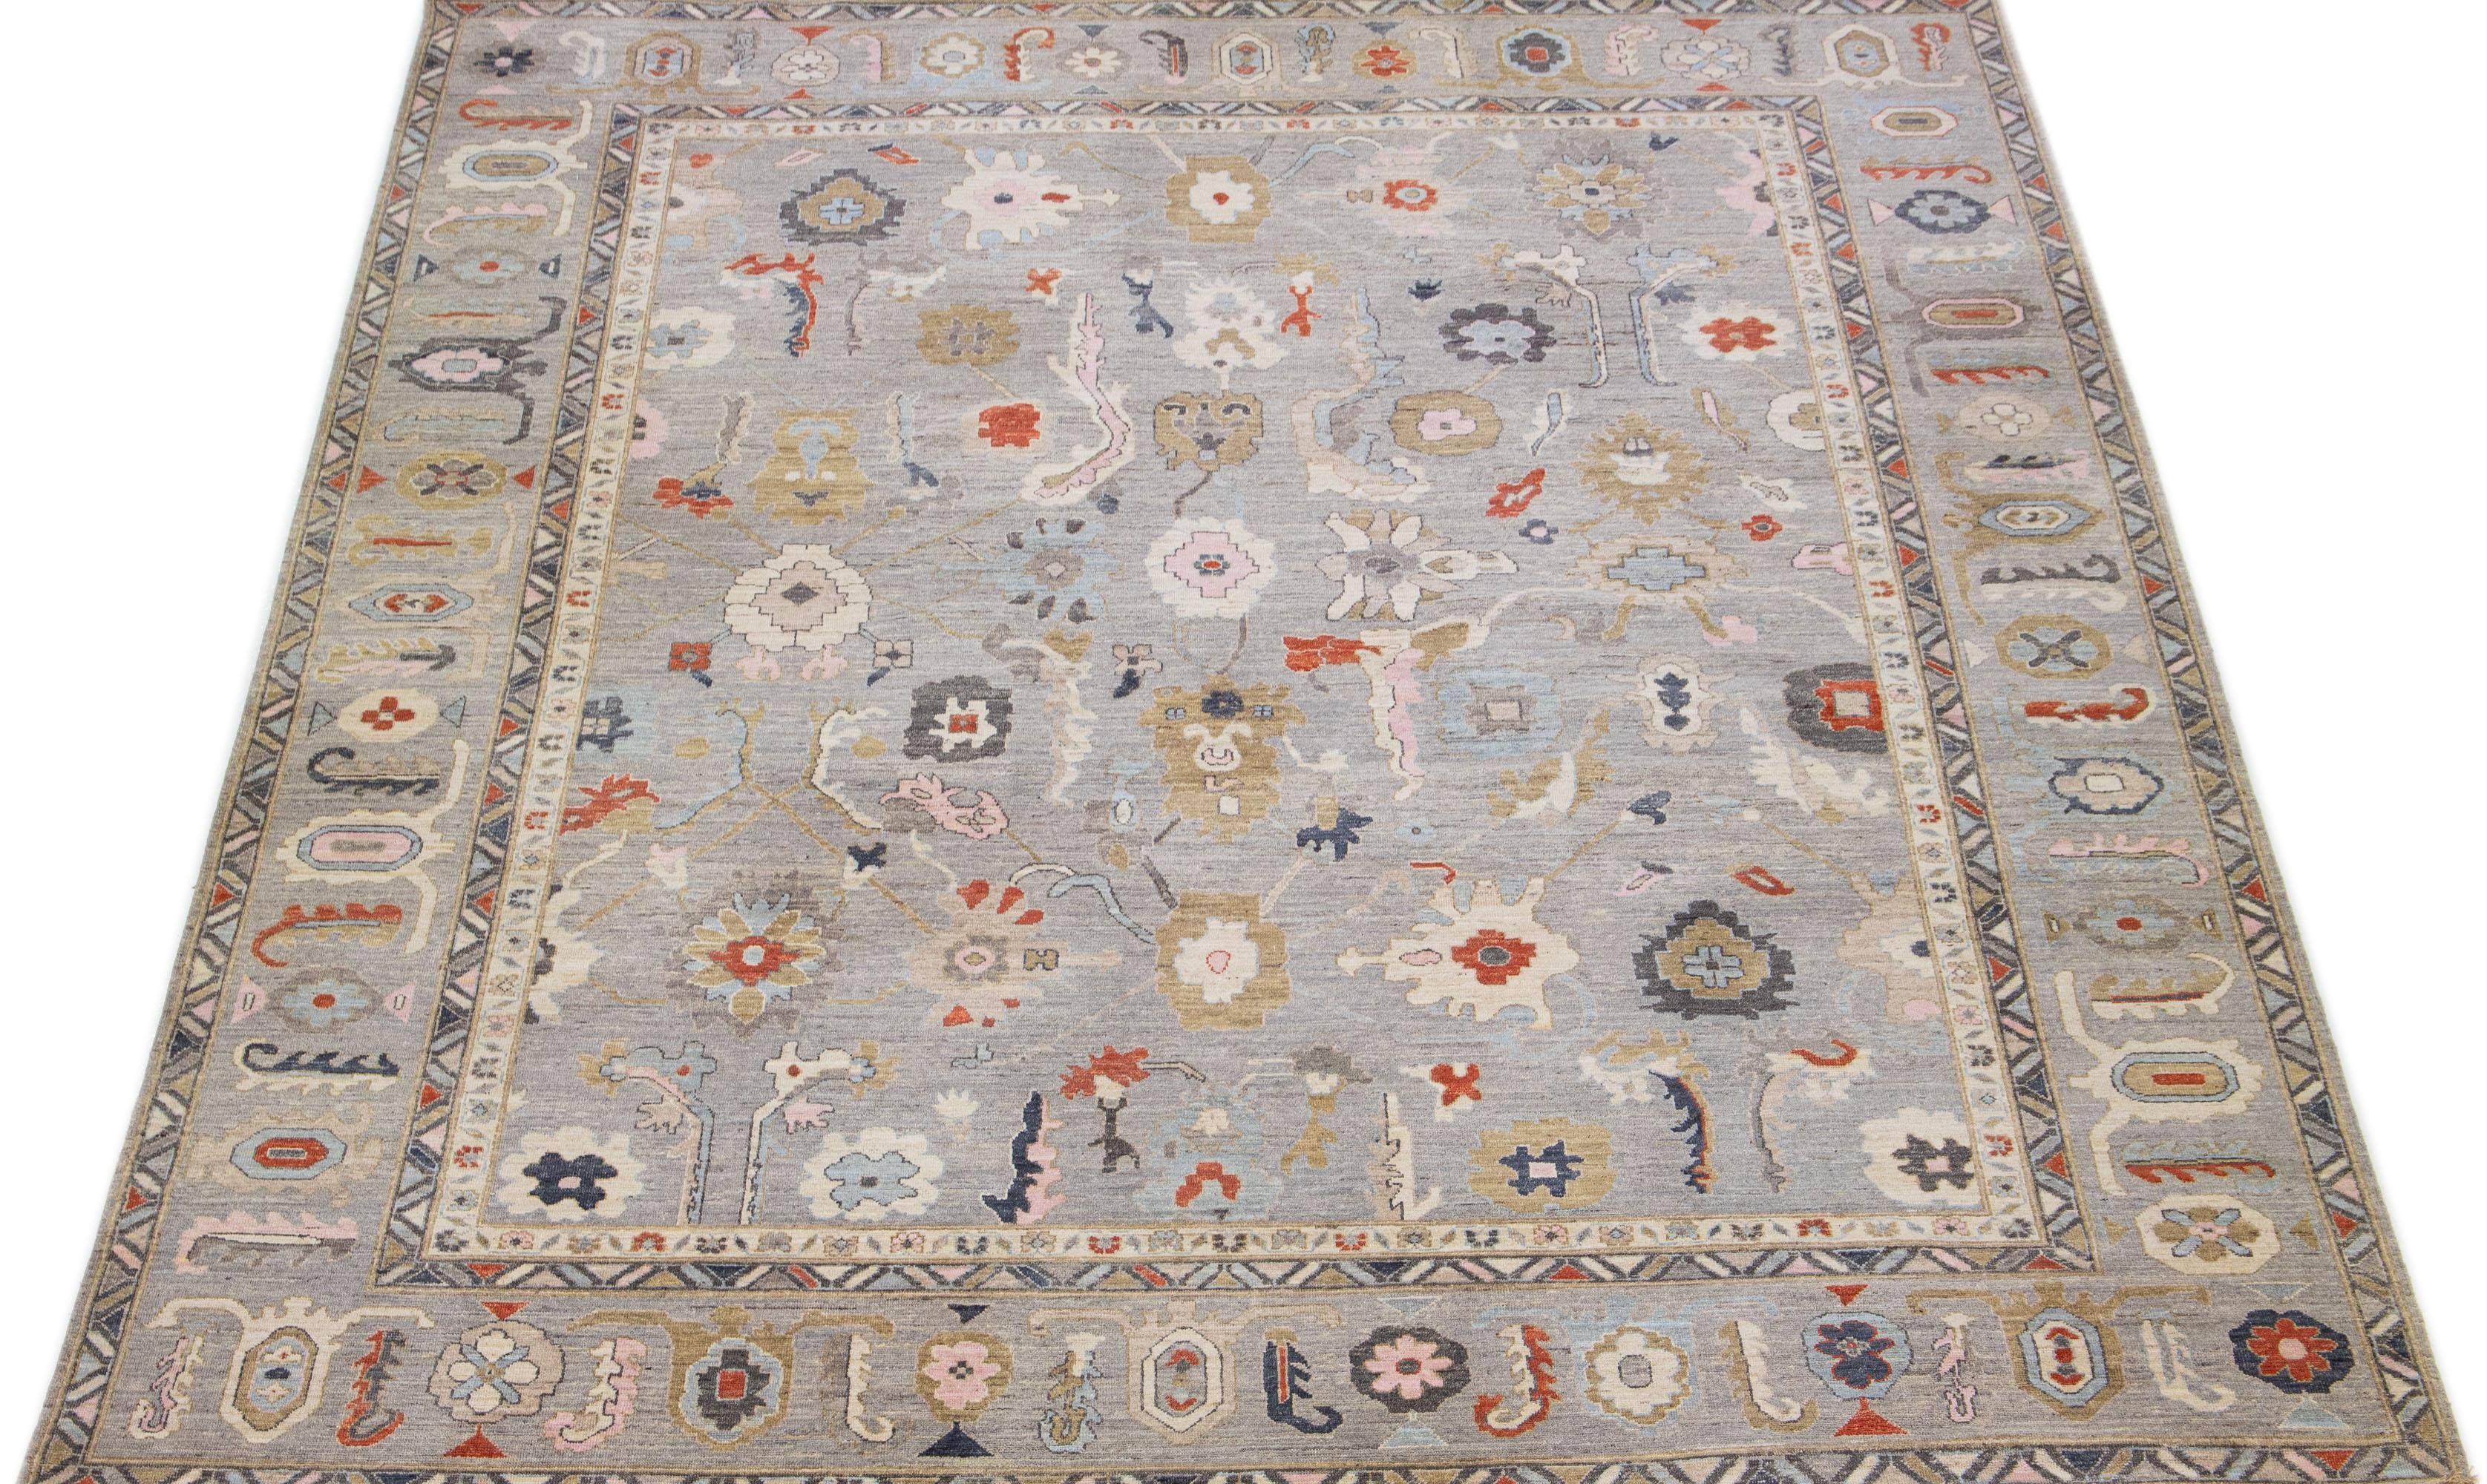 Ce tapis surdimensionné en laine nouée à la main à Sultanabad présente un superbe champ gris avec un cadre à motifs. Le tapis met en outre en valeur des accents rouille, bleus et roses dans un motif floral époustouflant qui embellit l'ensemble du